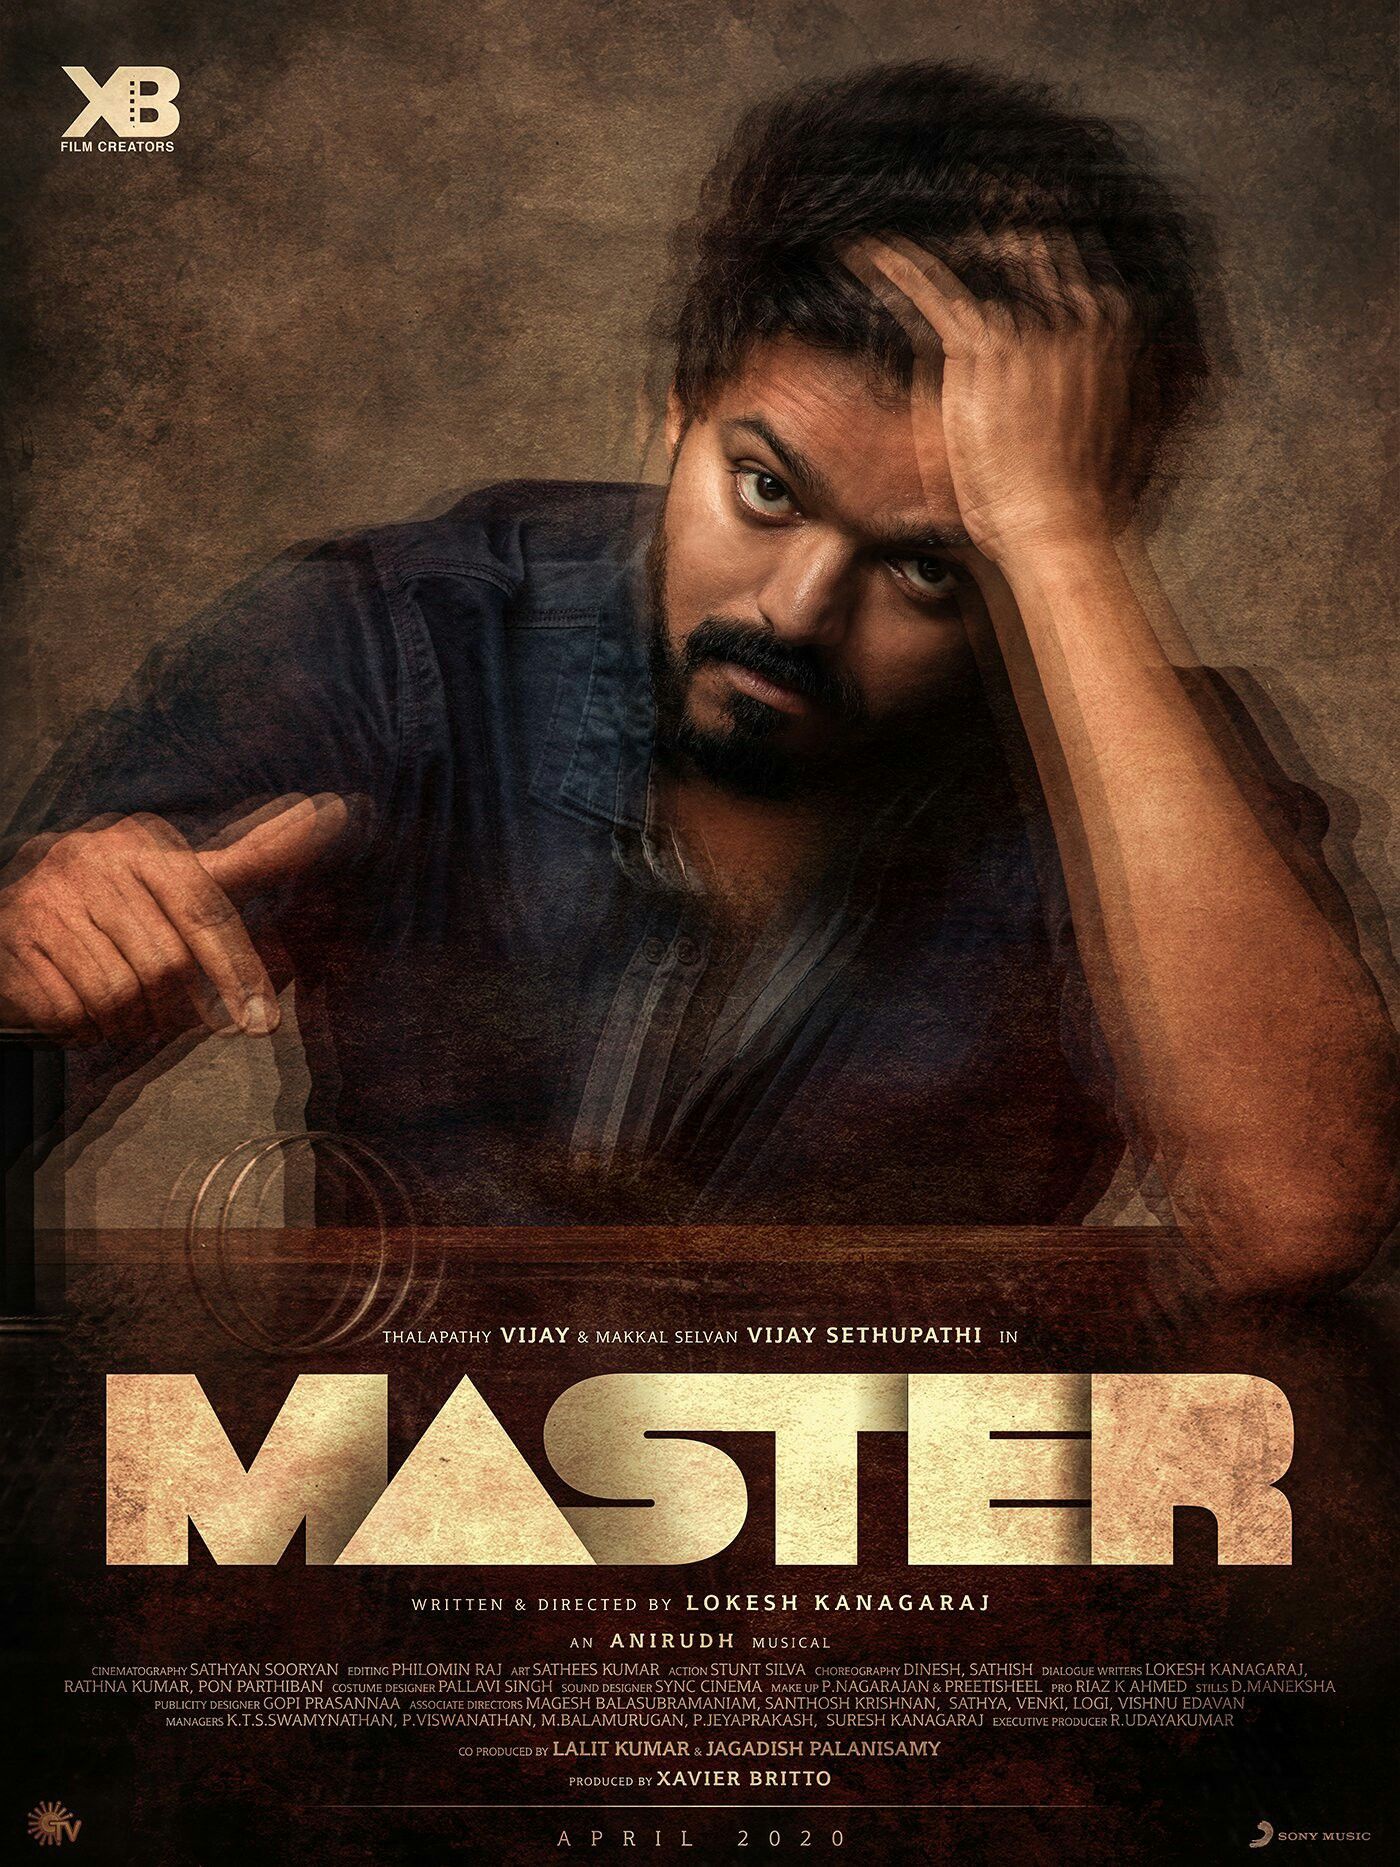 Vijay Master Movie First Look Poster. Tamil Ringtones, Master Music, Vijay Actor